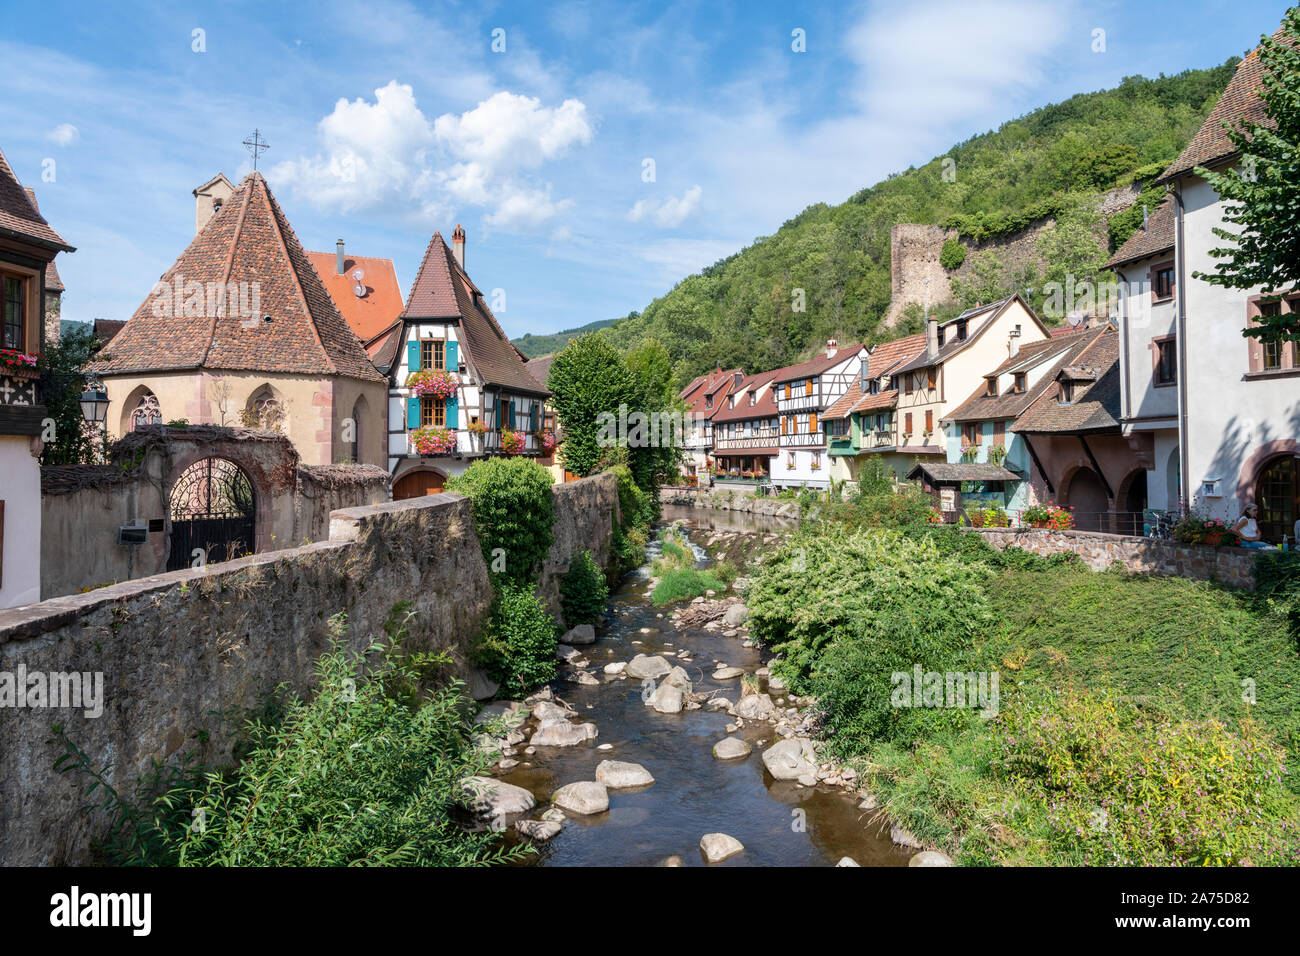 Alte Fachwerkhäuser und Gebäude in der mittelalterlichen Stadt Kayserberg auf dem Fluss Weiss, Elsass Frankreich Stockfoto